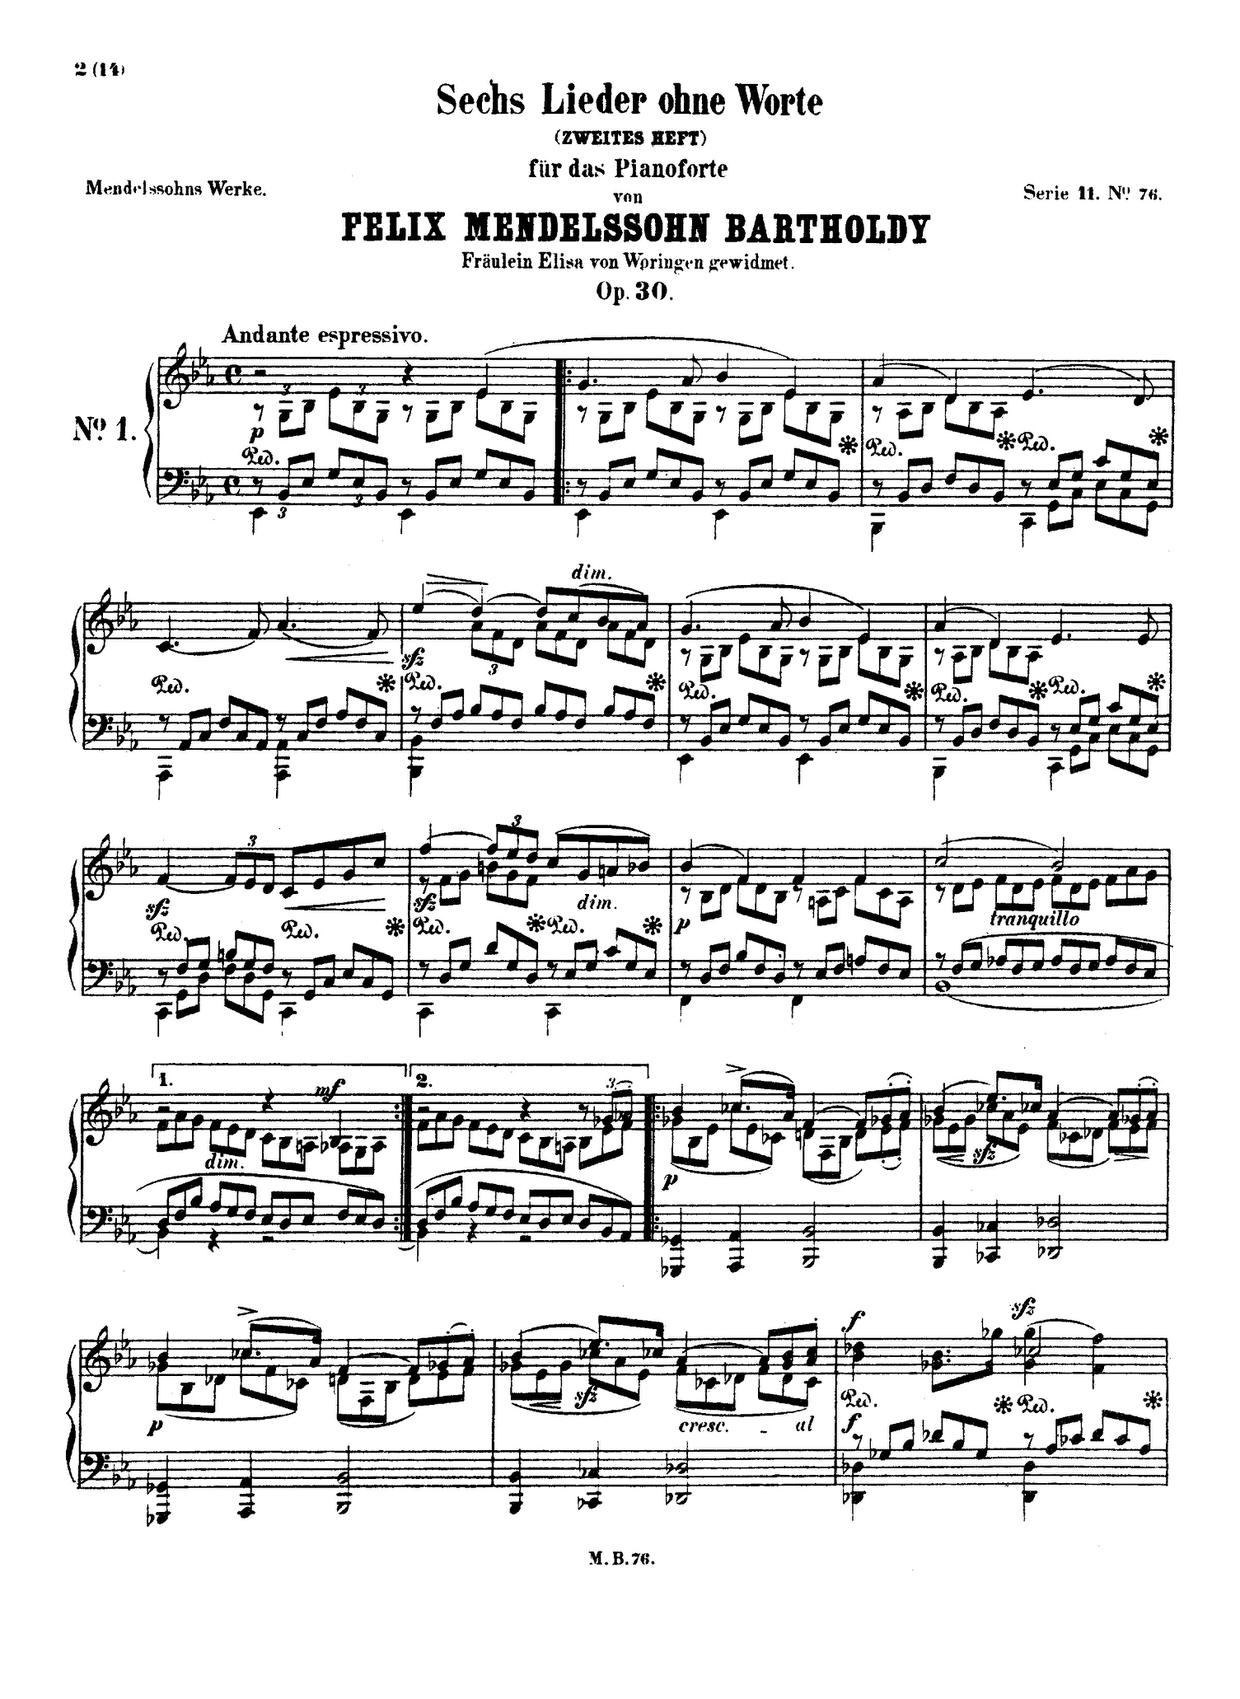 Lieder ohne Worte, Book 2, Op. 30 (Excerpts): No. 6 in F-Sharp Minor, MWV U 110 "Venetianisches琴譜